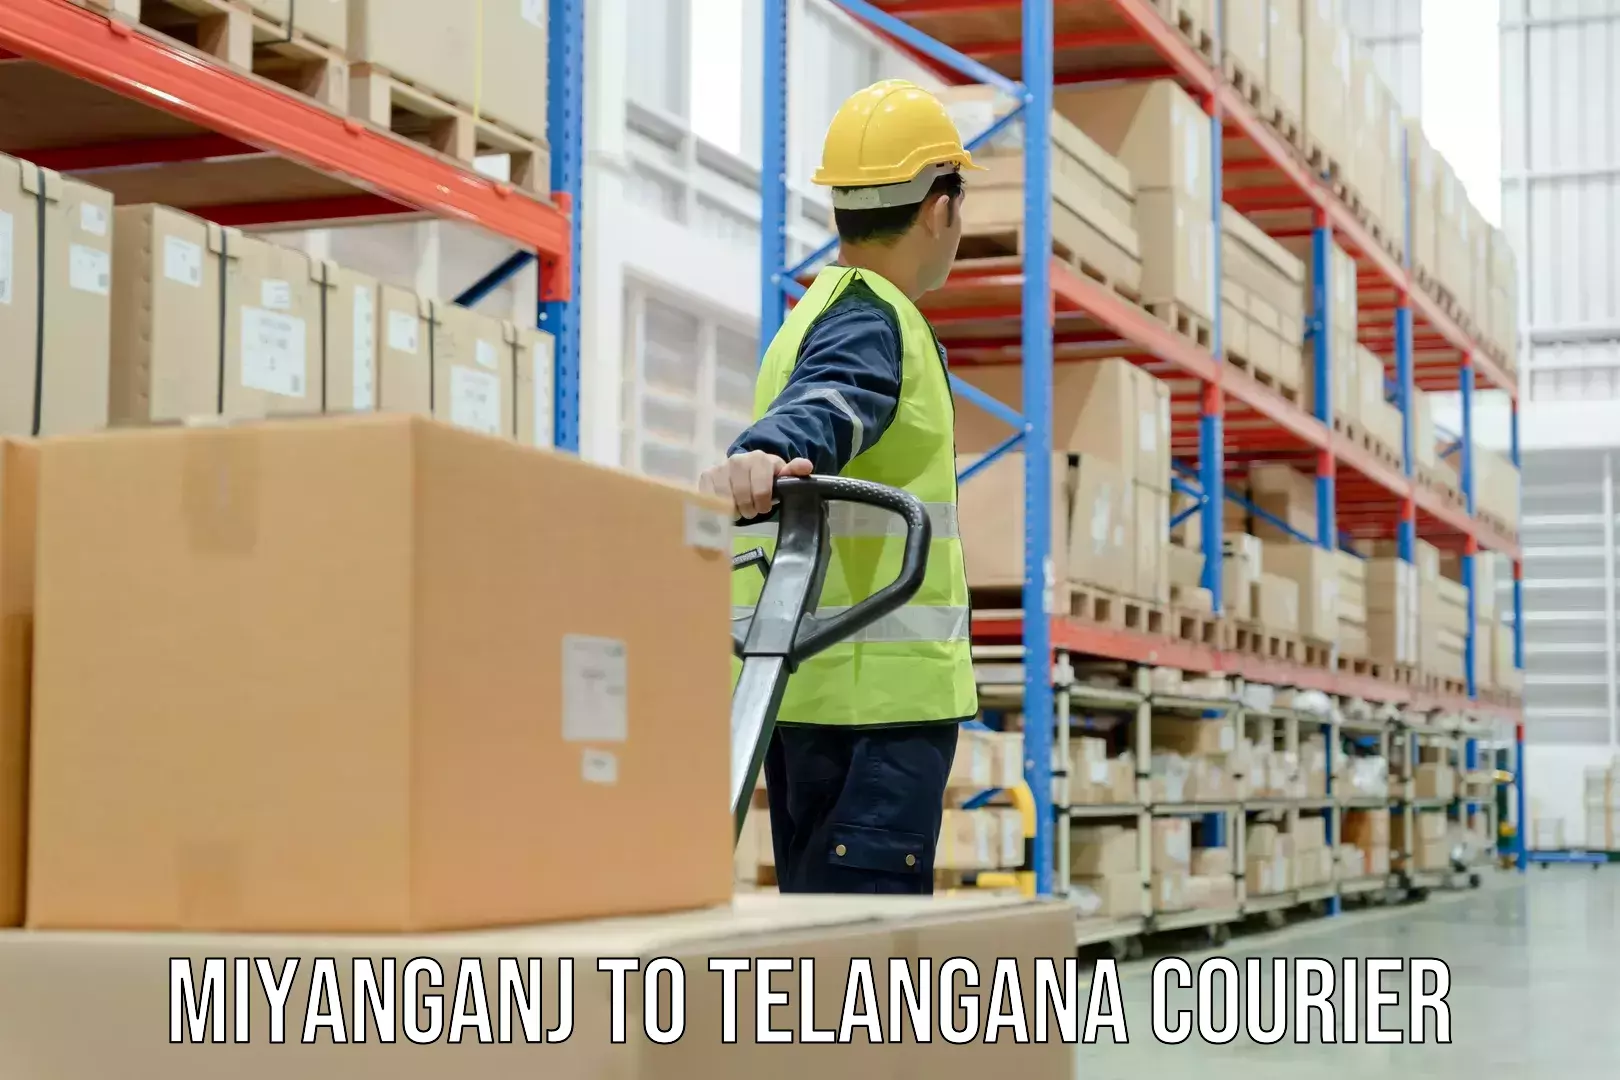 Courier service partnerships in Miyanganj to Telangana